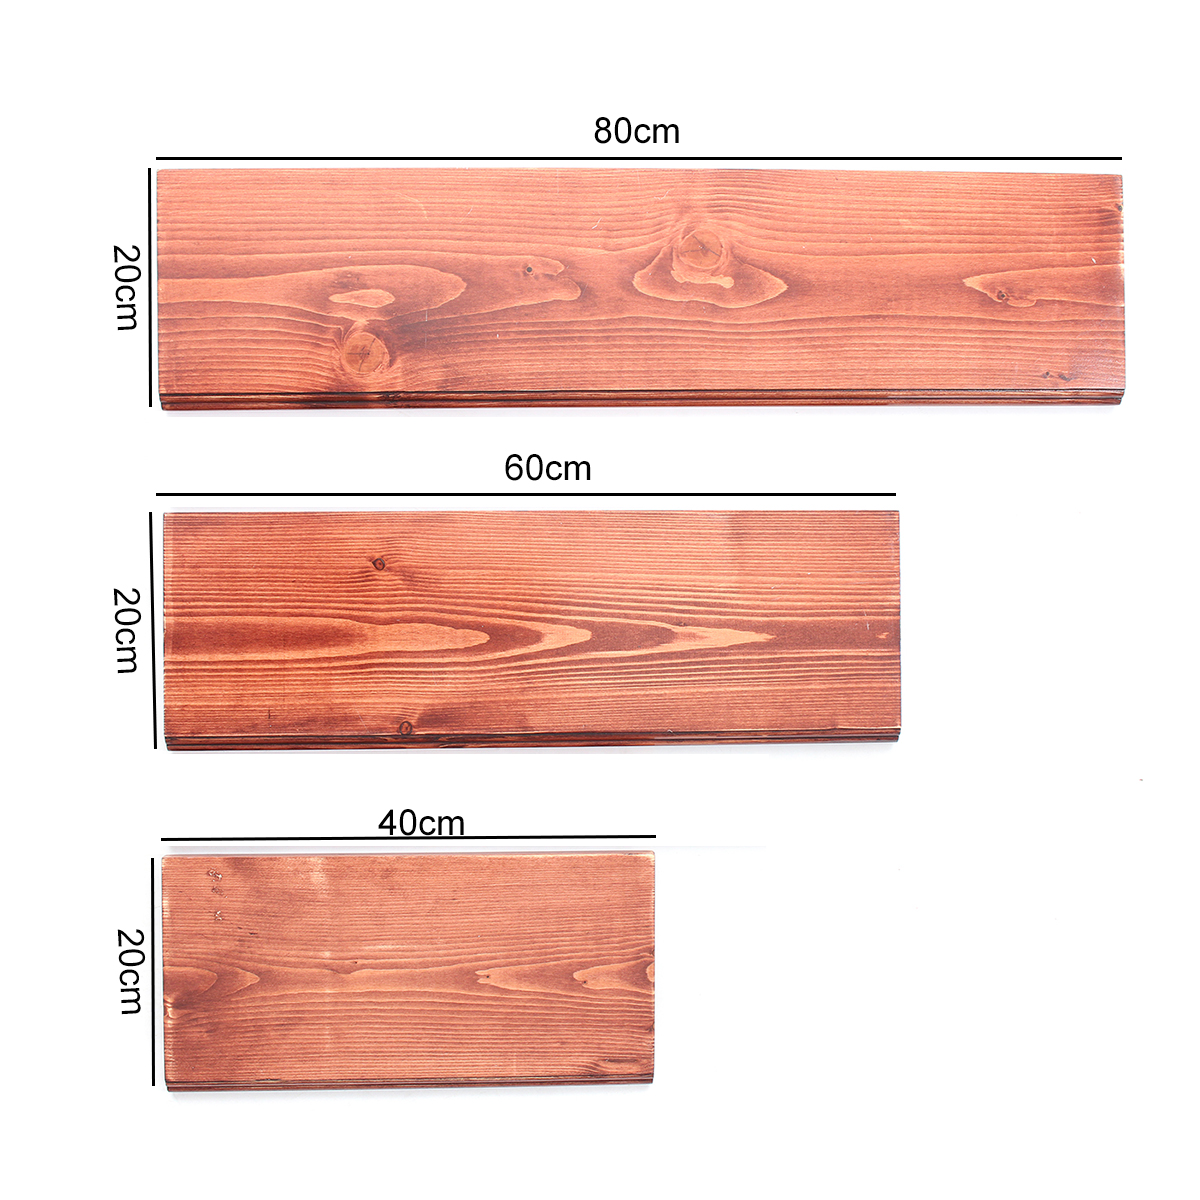 3Pcs-406080cm-Wooden-Board-Shelves-Wall-Mount-Floating-Shelf-Display-Bracket-Waterproof-Decor-1390599-4